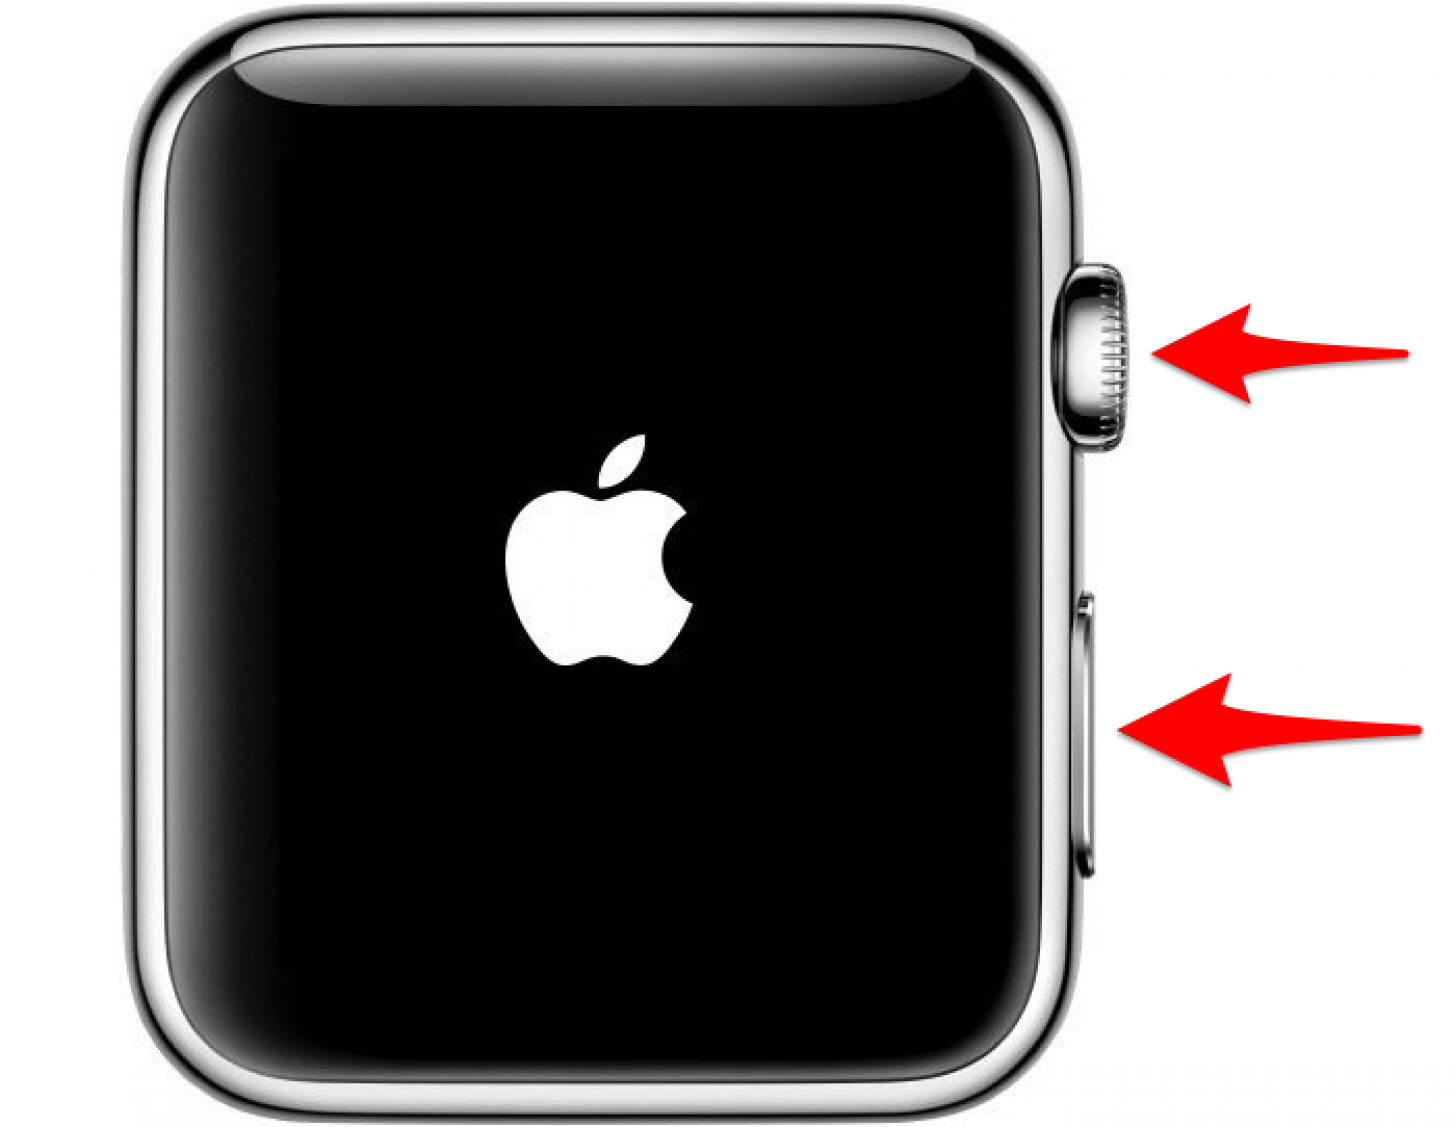 Si un reinicio normal no funciona, intente forzar el reinicio de su Apple Watch 